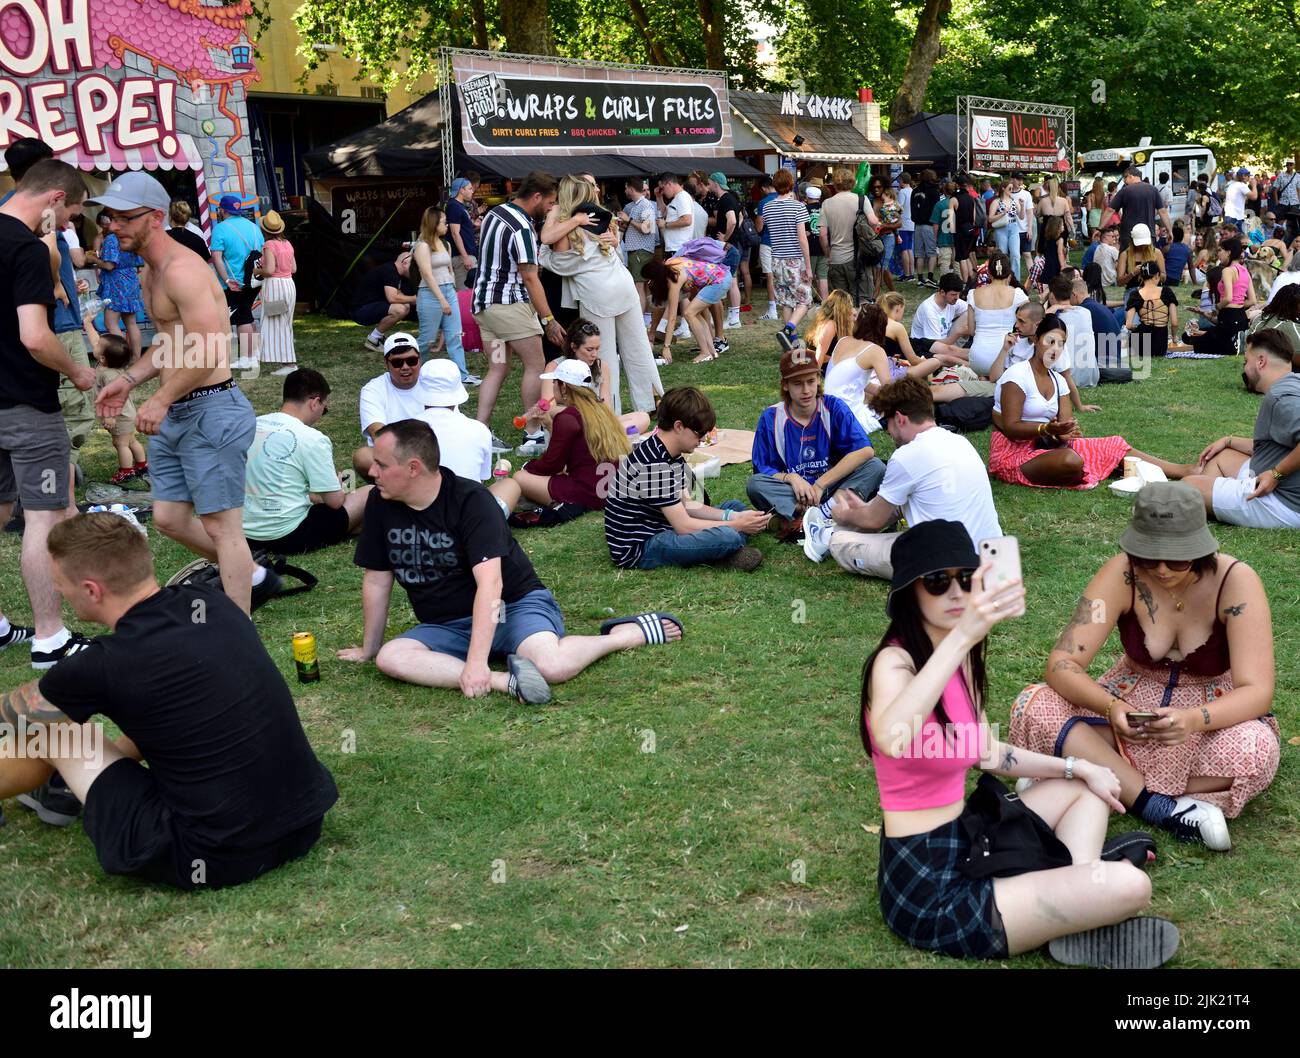 Des foules de personnes se détendant sur l'herbe lors de la chaude journée d'été dans "Queens Square" à côté des stands de nourriture, Bristol Harbour festival, Royaume-Uni Banque D'Images